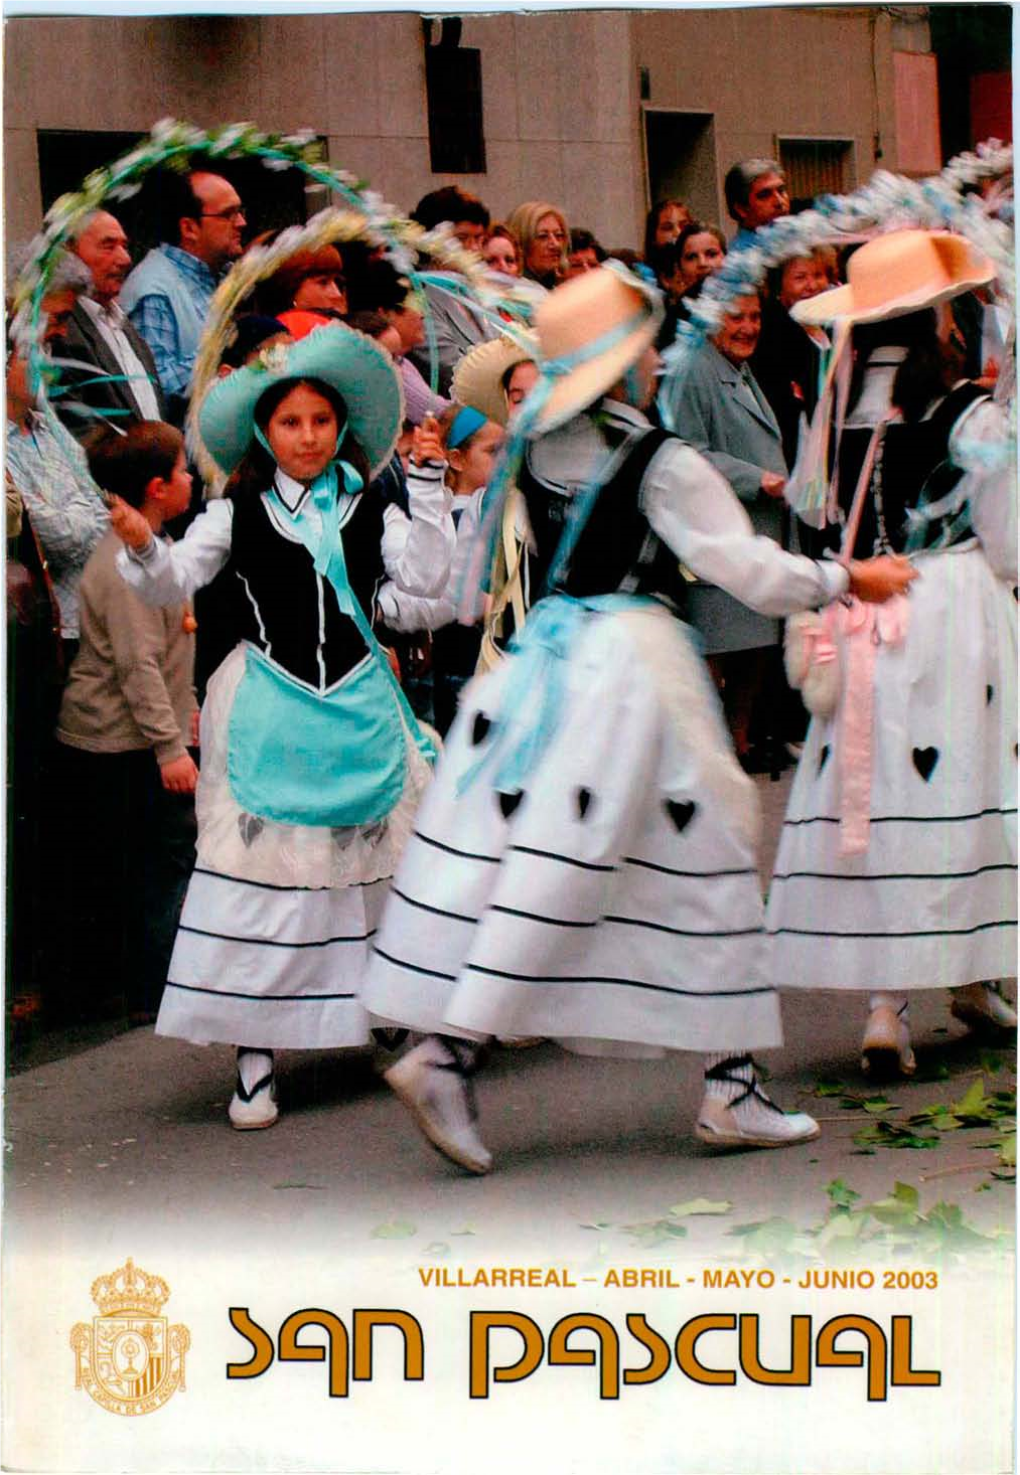 Villarreal - Abril - Mayo - Junio 2003 Azuvi